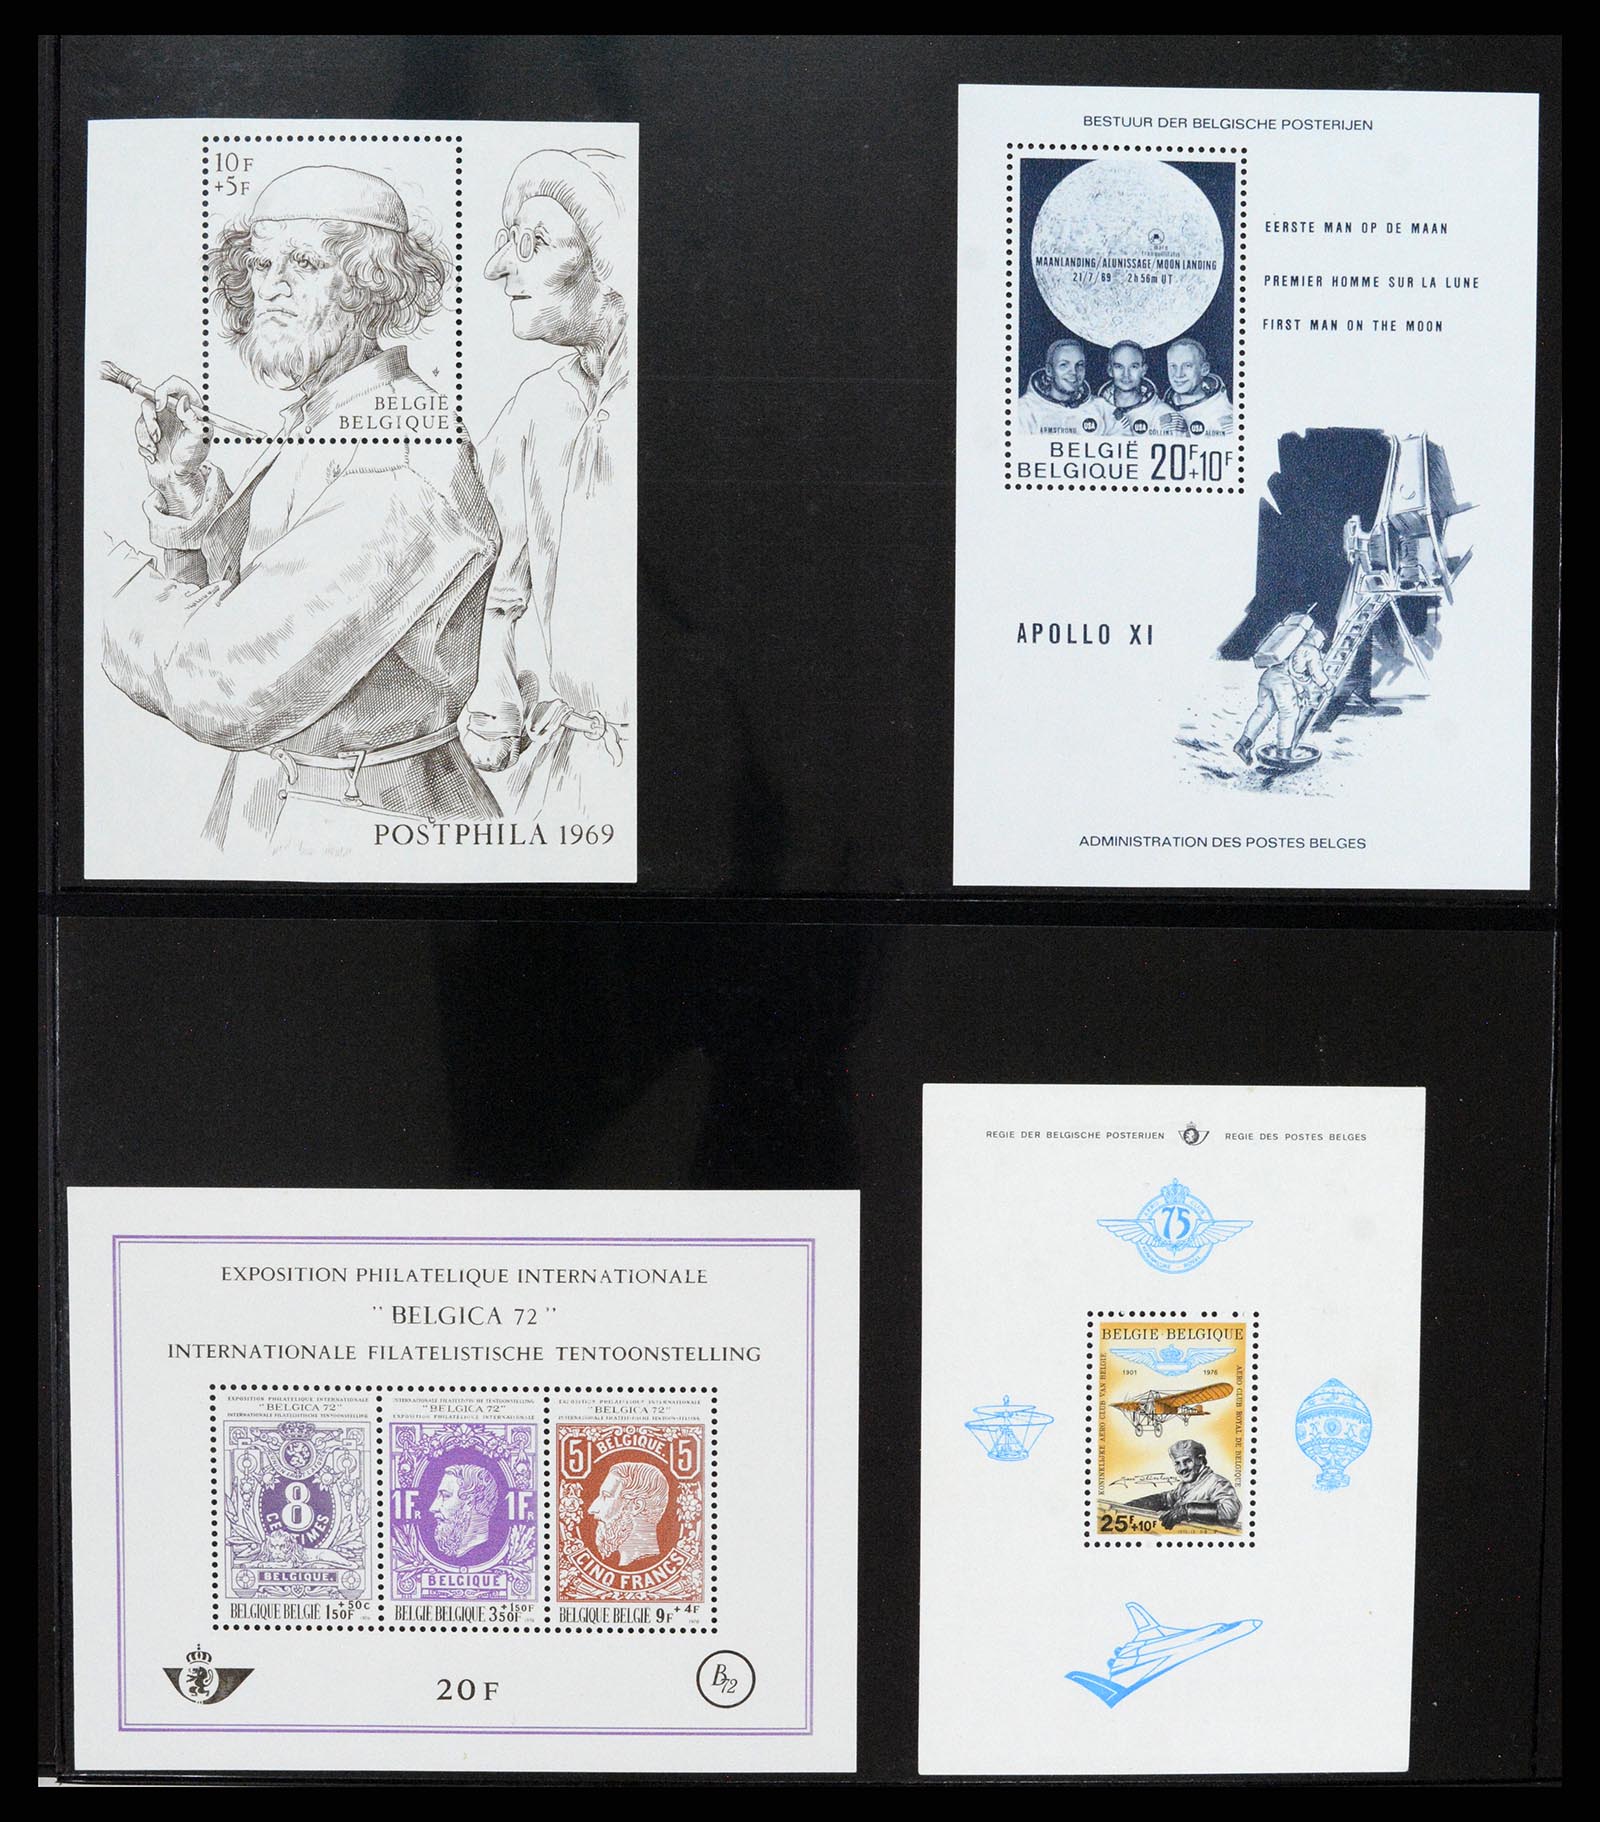 37345 005 - Stamp collection 37345 European countries souvenir sheets.